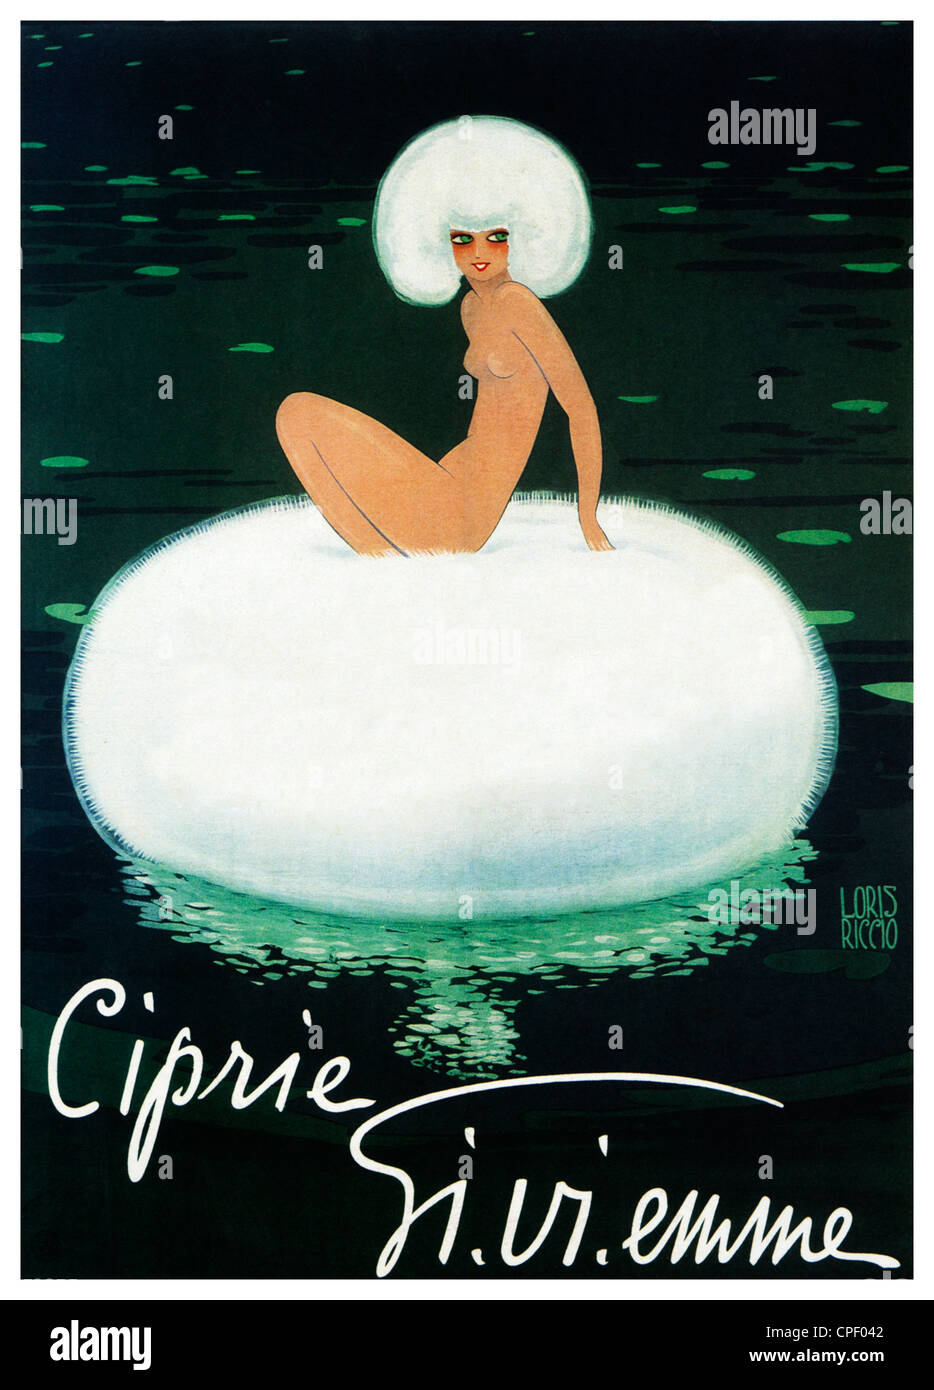 Ciprie Gi Vi Emme, Art déco 1920 affiche pour l'Italien de la poudre sur le visage, puff flottant sur un étang Banque D'Images